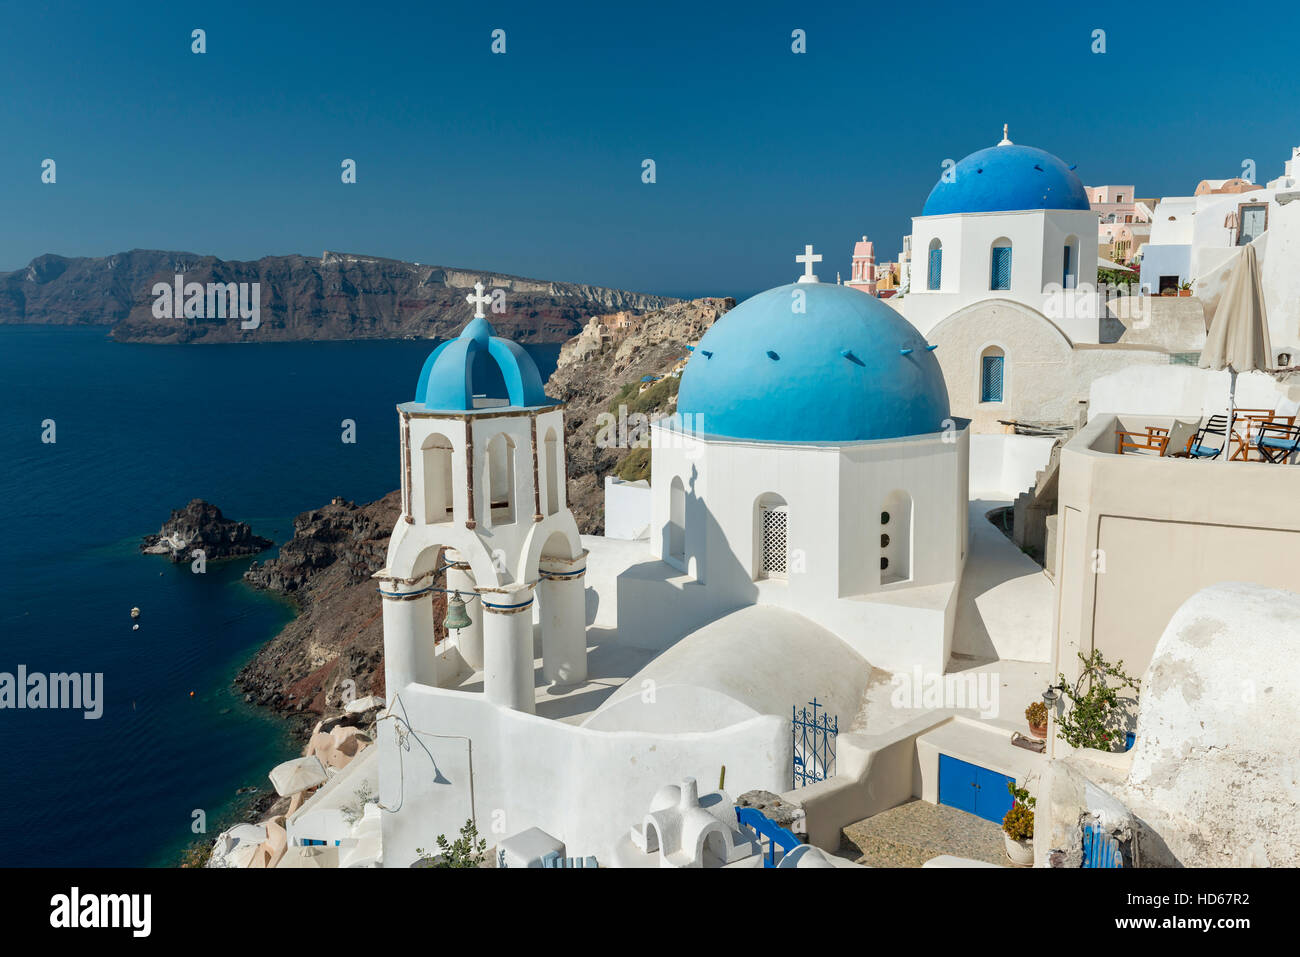 L'église orthodoxe avec dôme bleu et clocher, Oia, Santorini, Cyclades, Grèce Banque D'Images